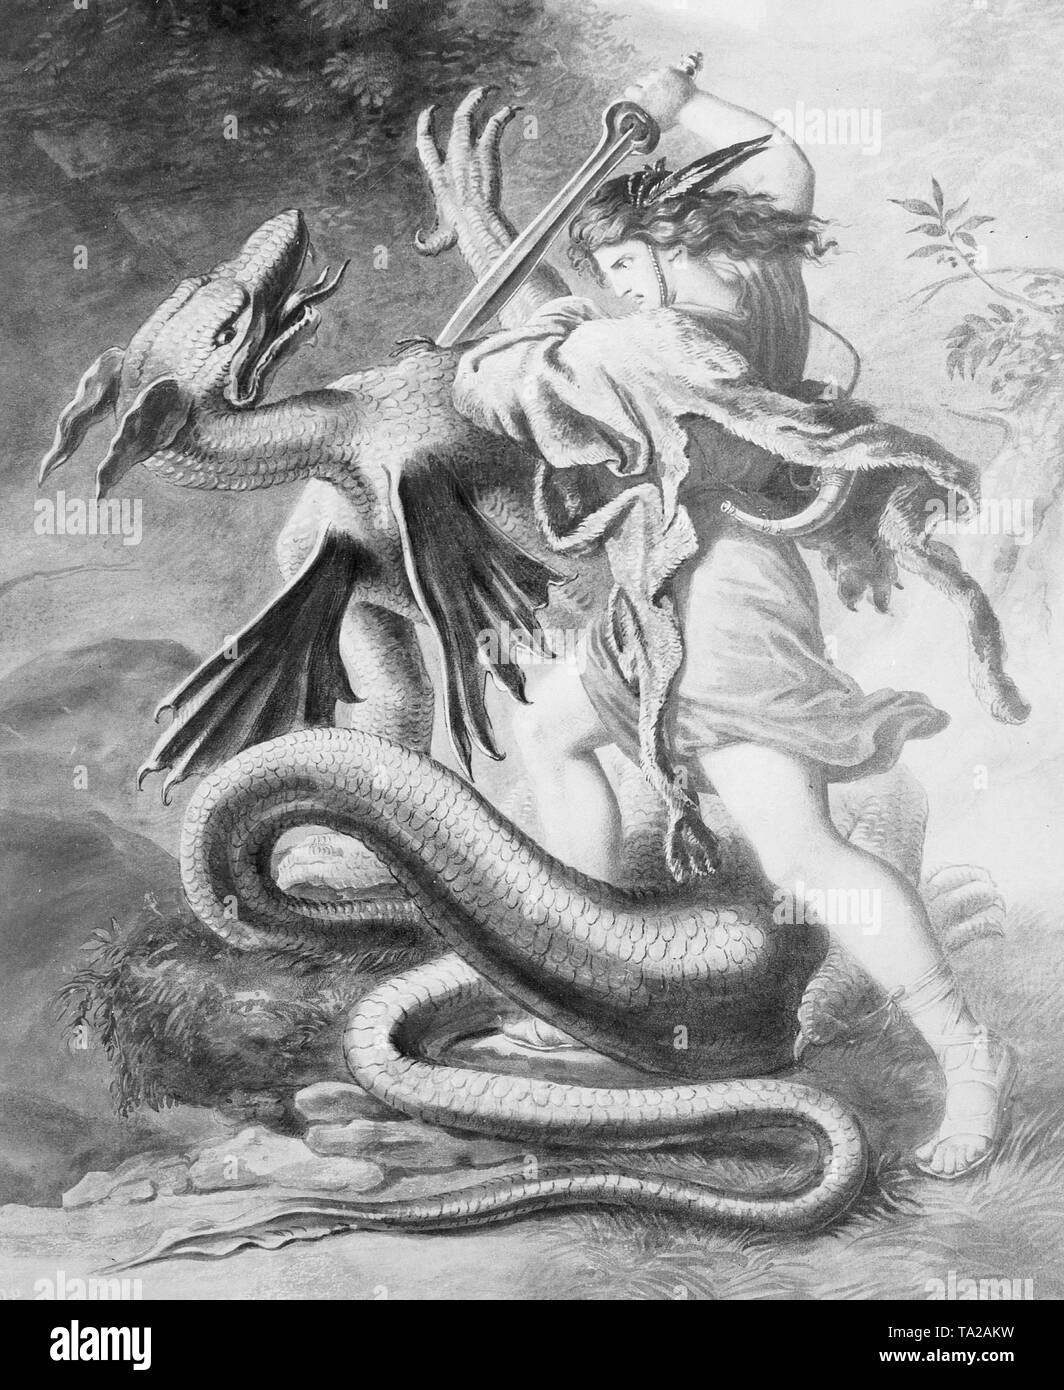 La figure mythique germanique Siegfried terrassant le dragon. Banque D'Images